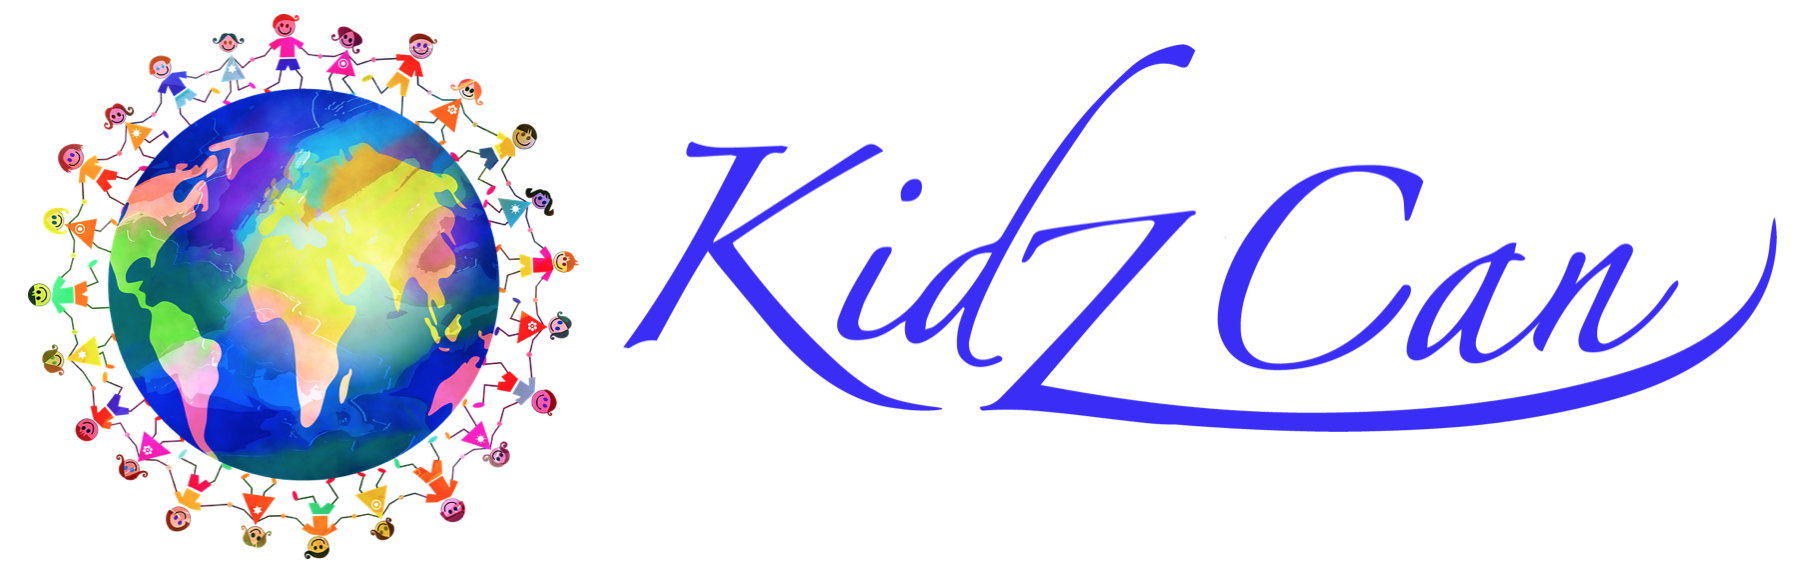 Kidz Can, Inc.